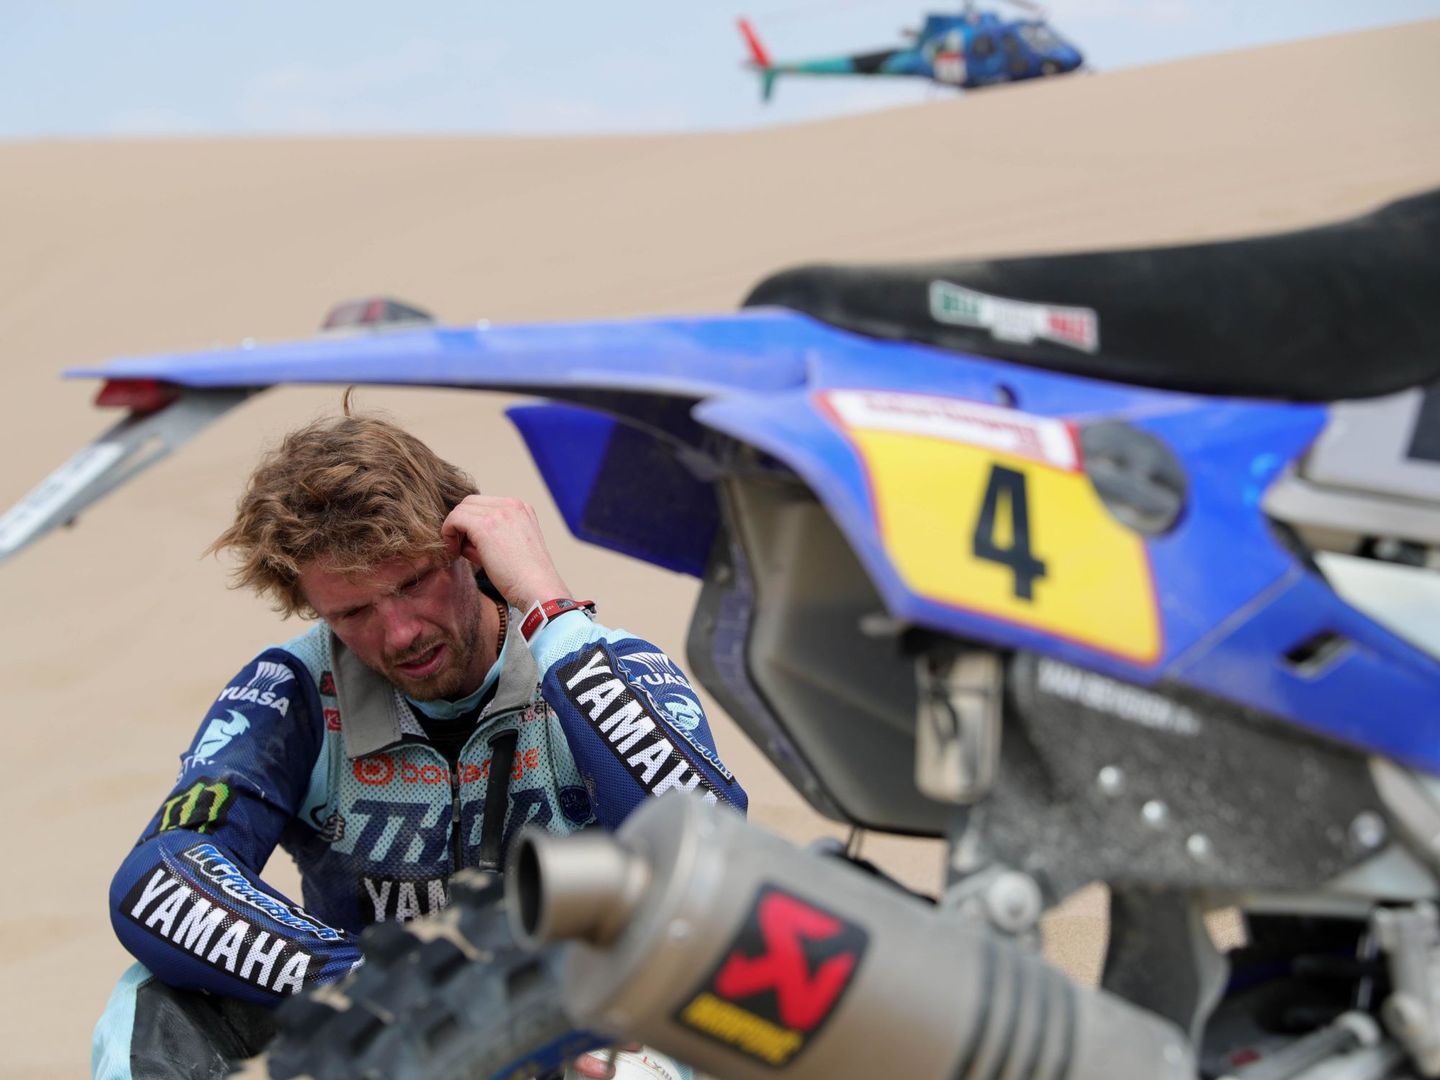 Van Beveren, en lágrimas tras abandonar el Dakar 2019 al romperse el motor de su Yamaha. (EFE)